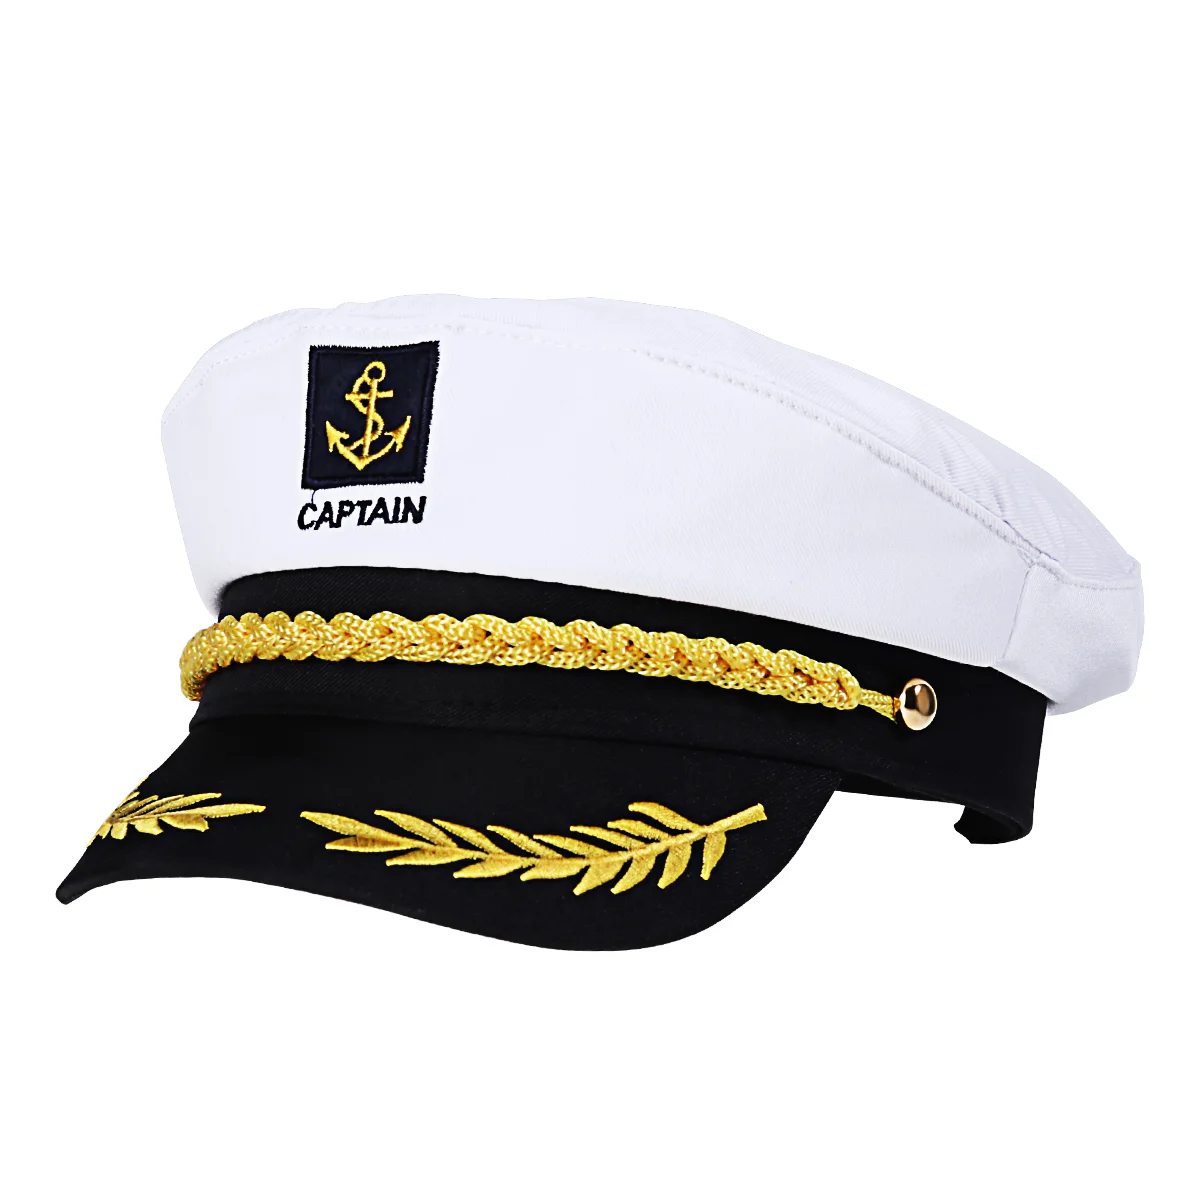 

Шляпа, капитан, матросский корабль, капитаны, яхта, шляпы, костюм, тёмно-синяя мужская кепка, корабль, морской цвет, адмирал, белый морской флот, женская лодка, пират